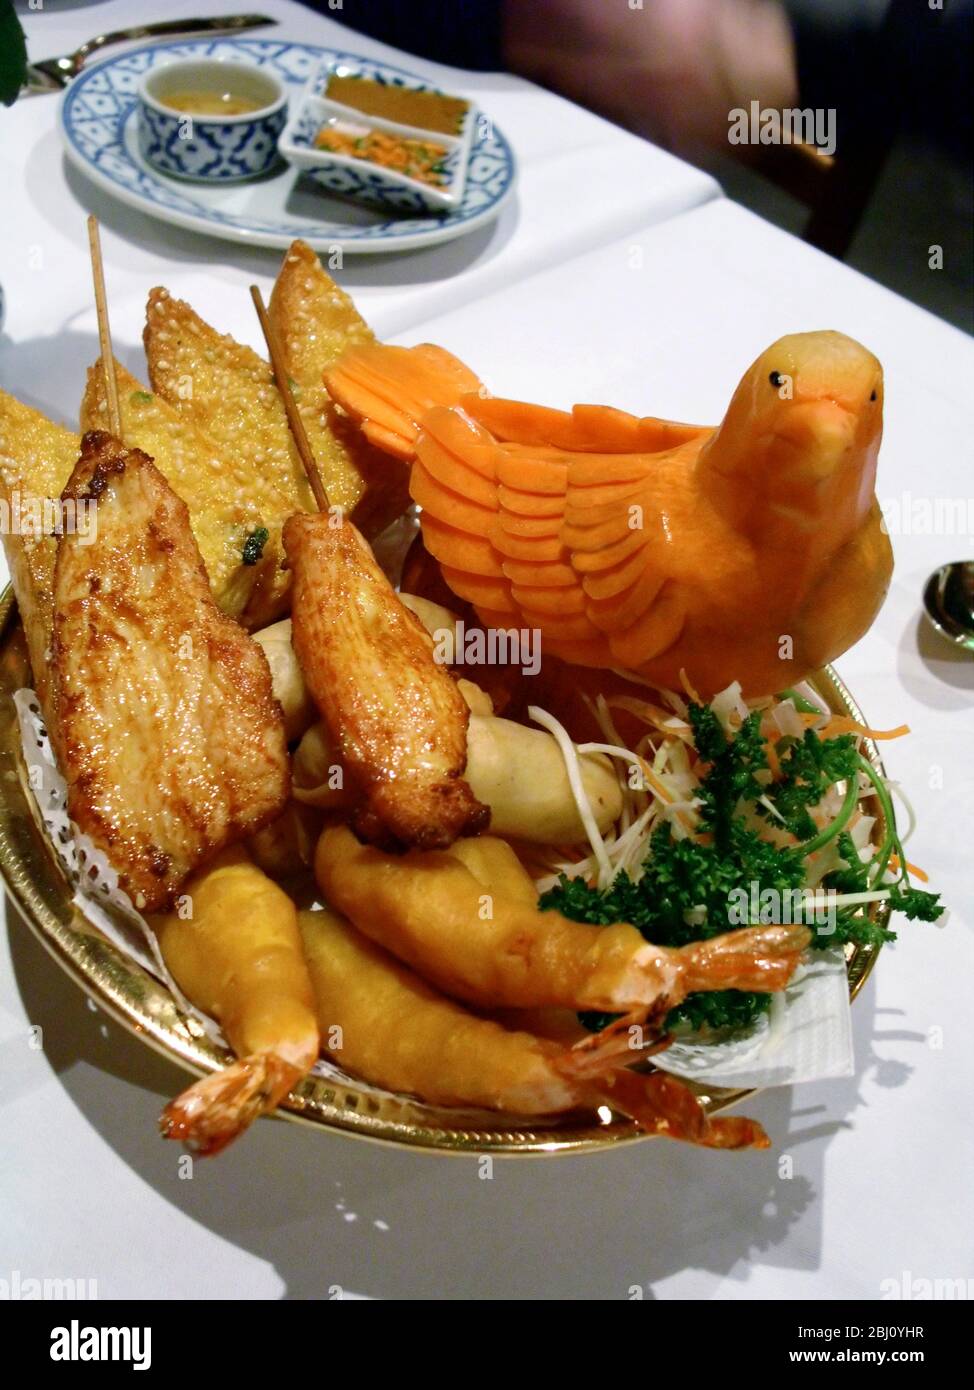 Des entrées thaïlandaises au restaurant avec un oiseau sculpté de carotte comme décoration - Banque D'Images